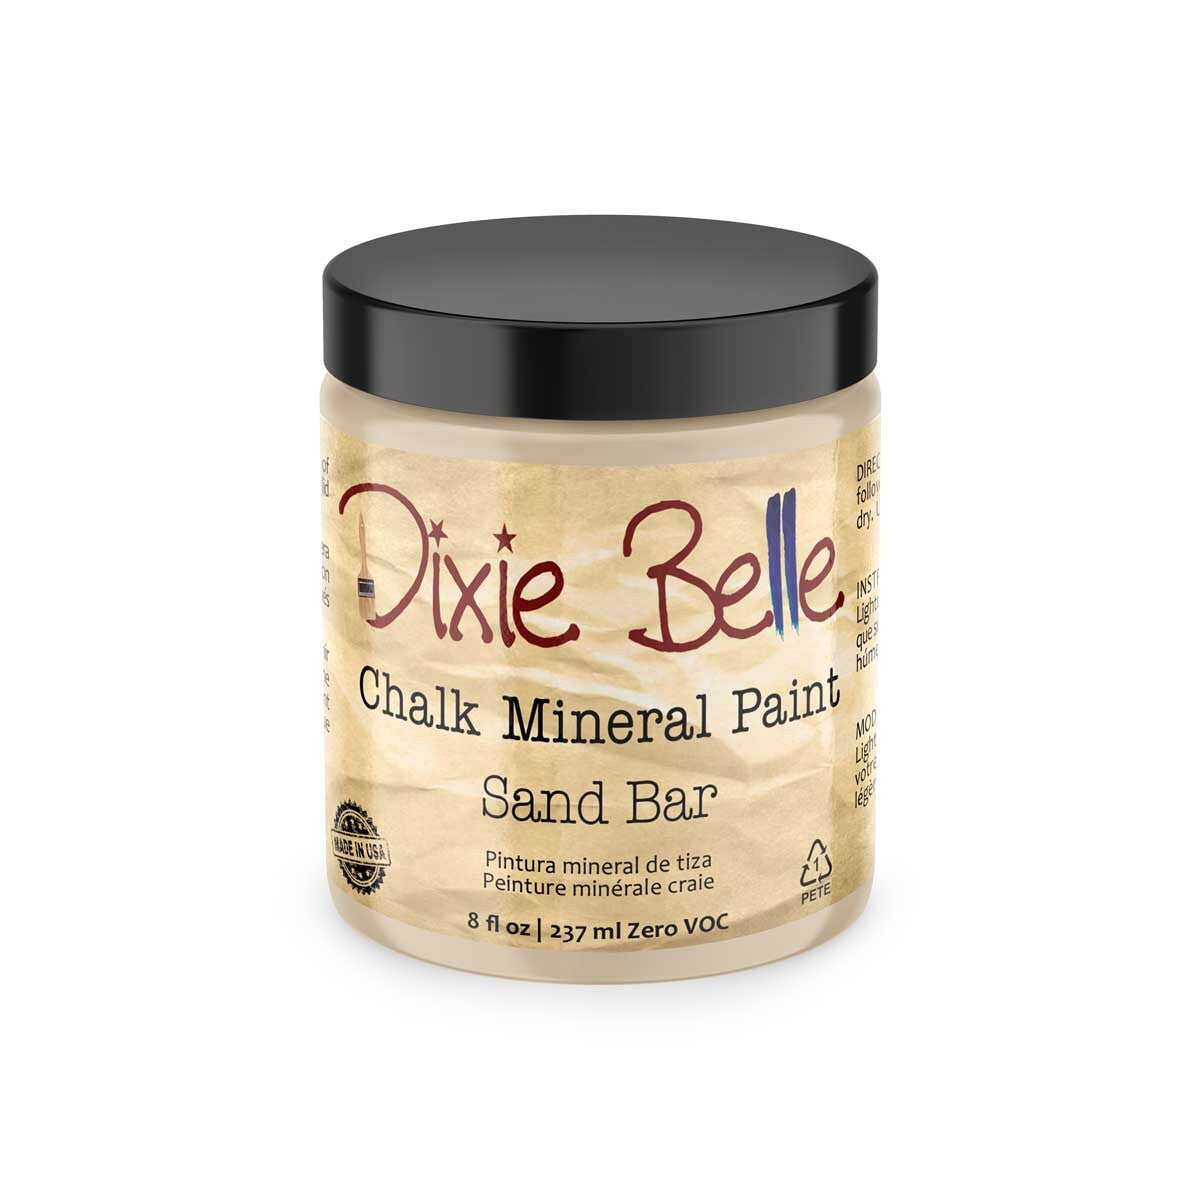 Dixie Belle Chalk Mineral Paint - Sand Bar 8 oz